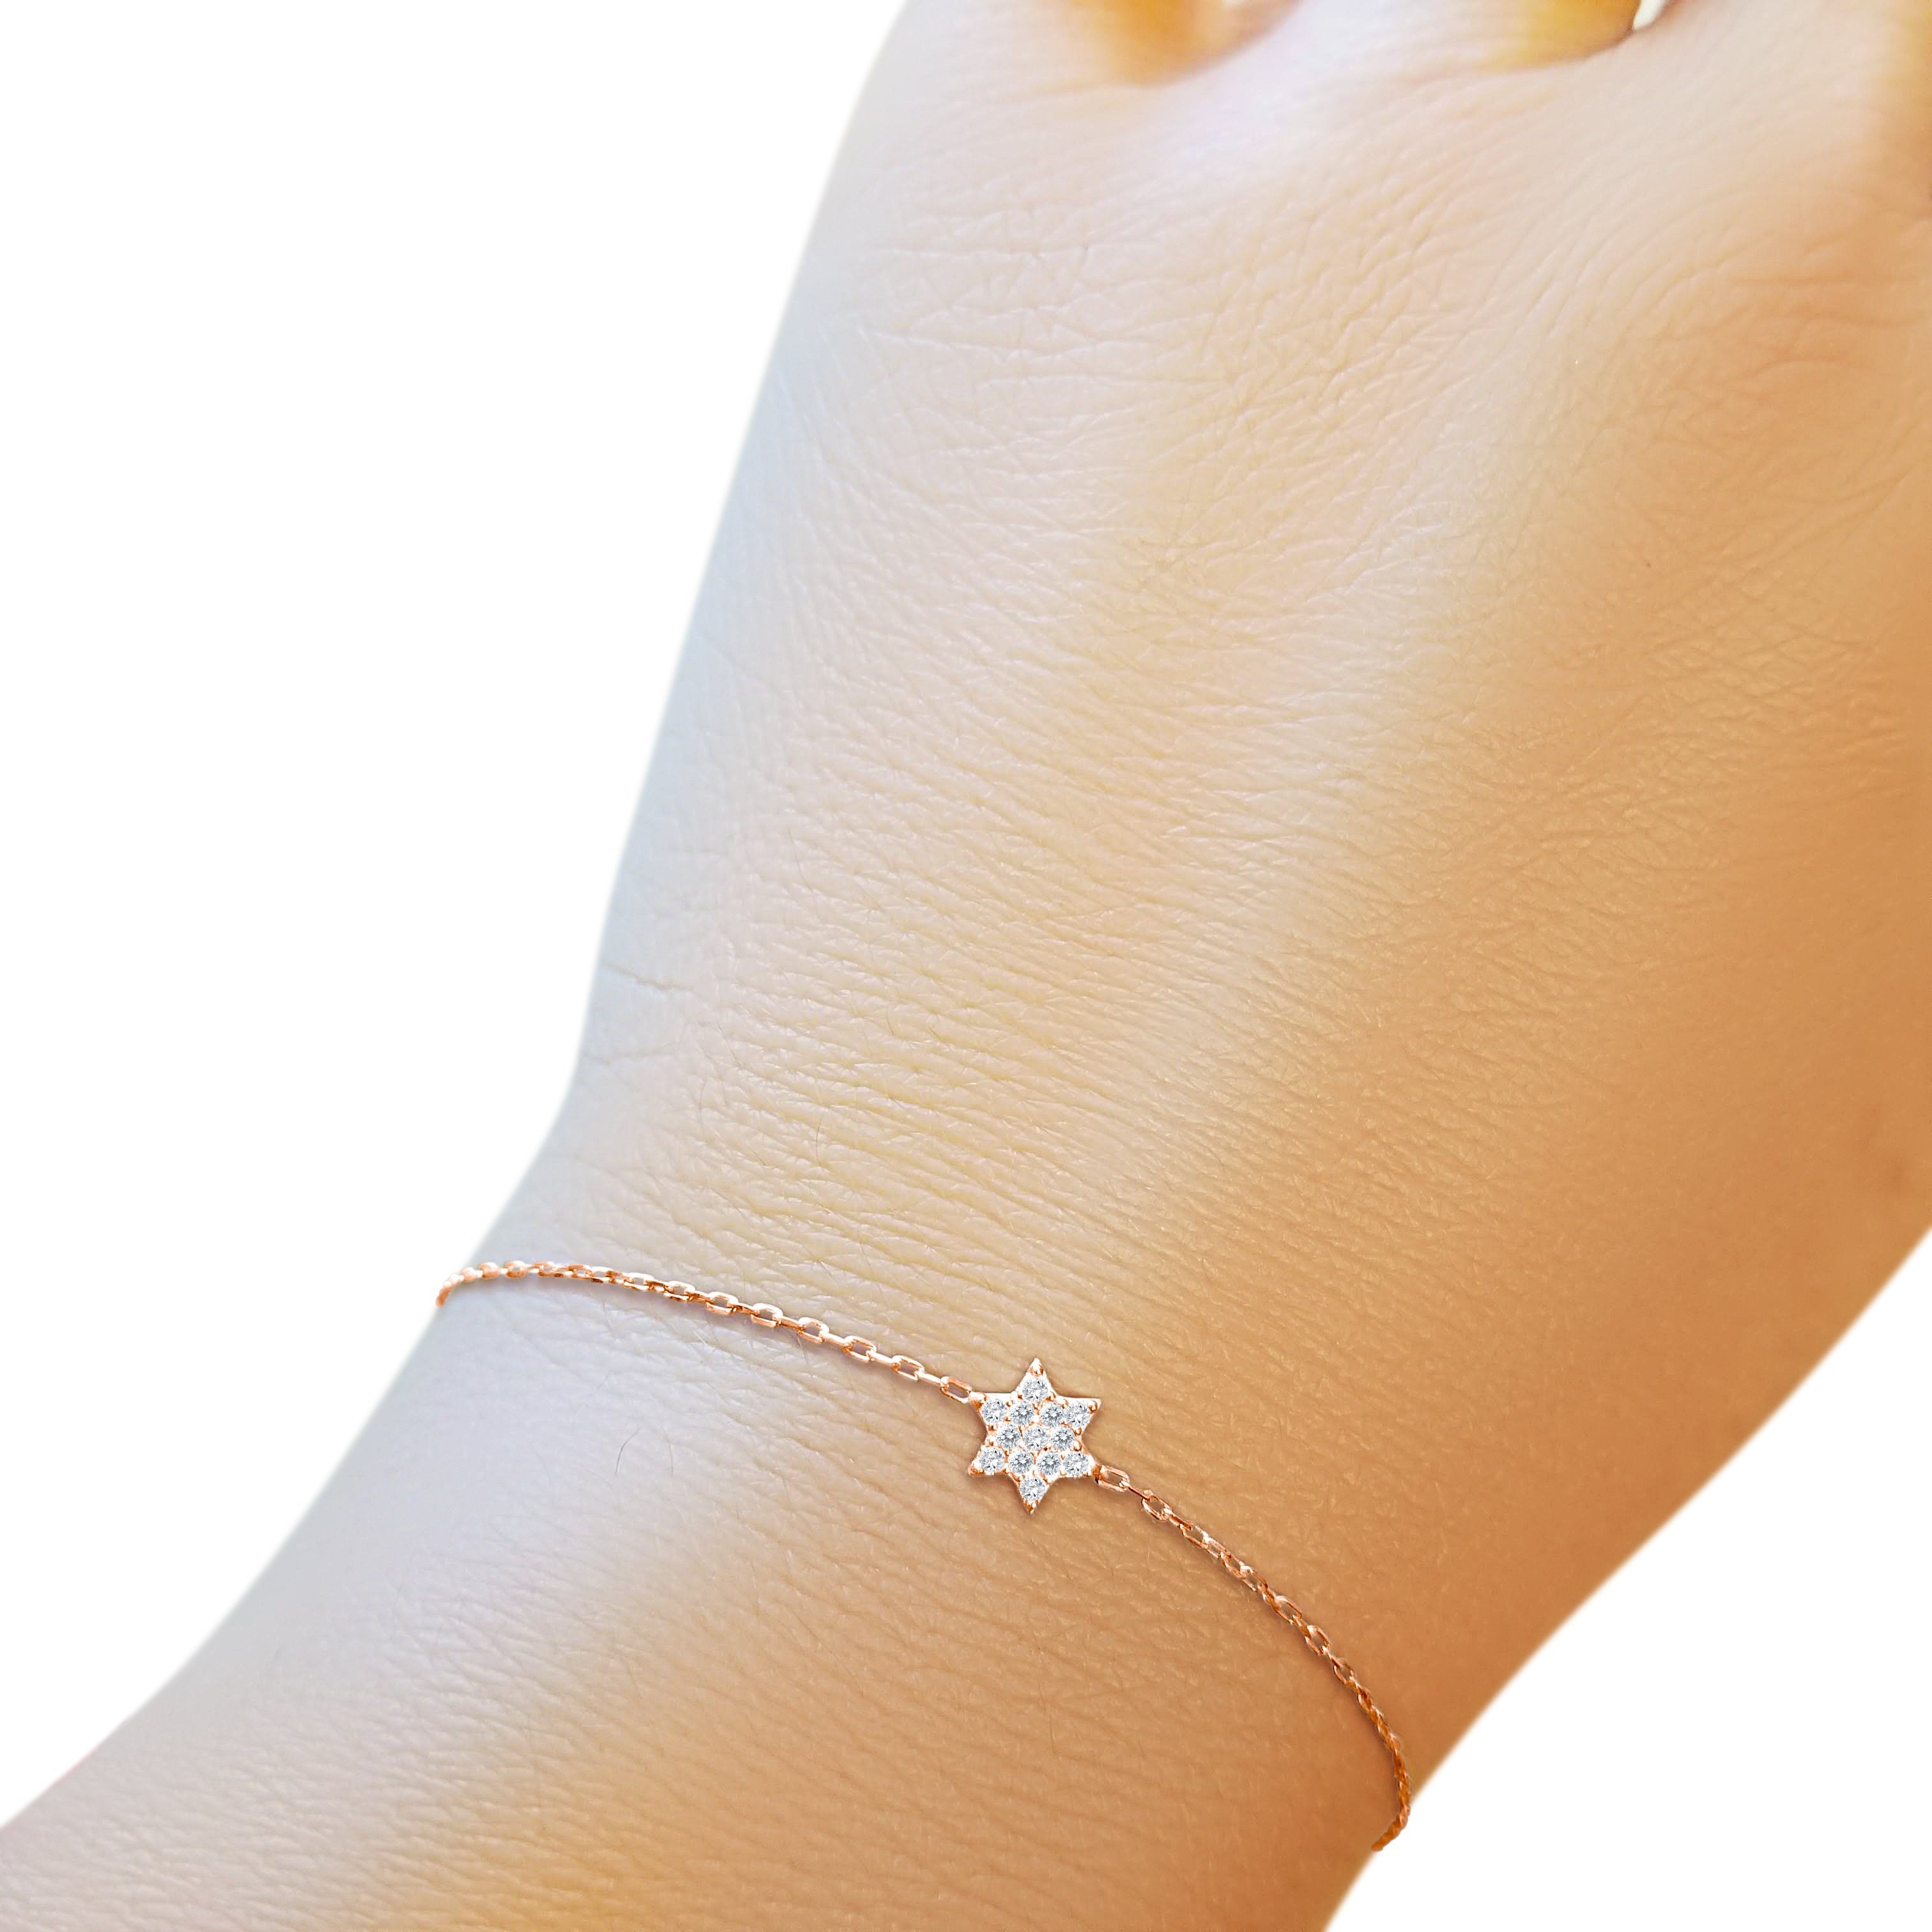 Jewish Star Bracelet-Tiny and Cute - Alef Bet Jewelry by Paula